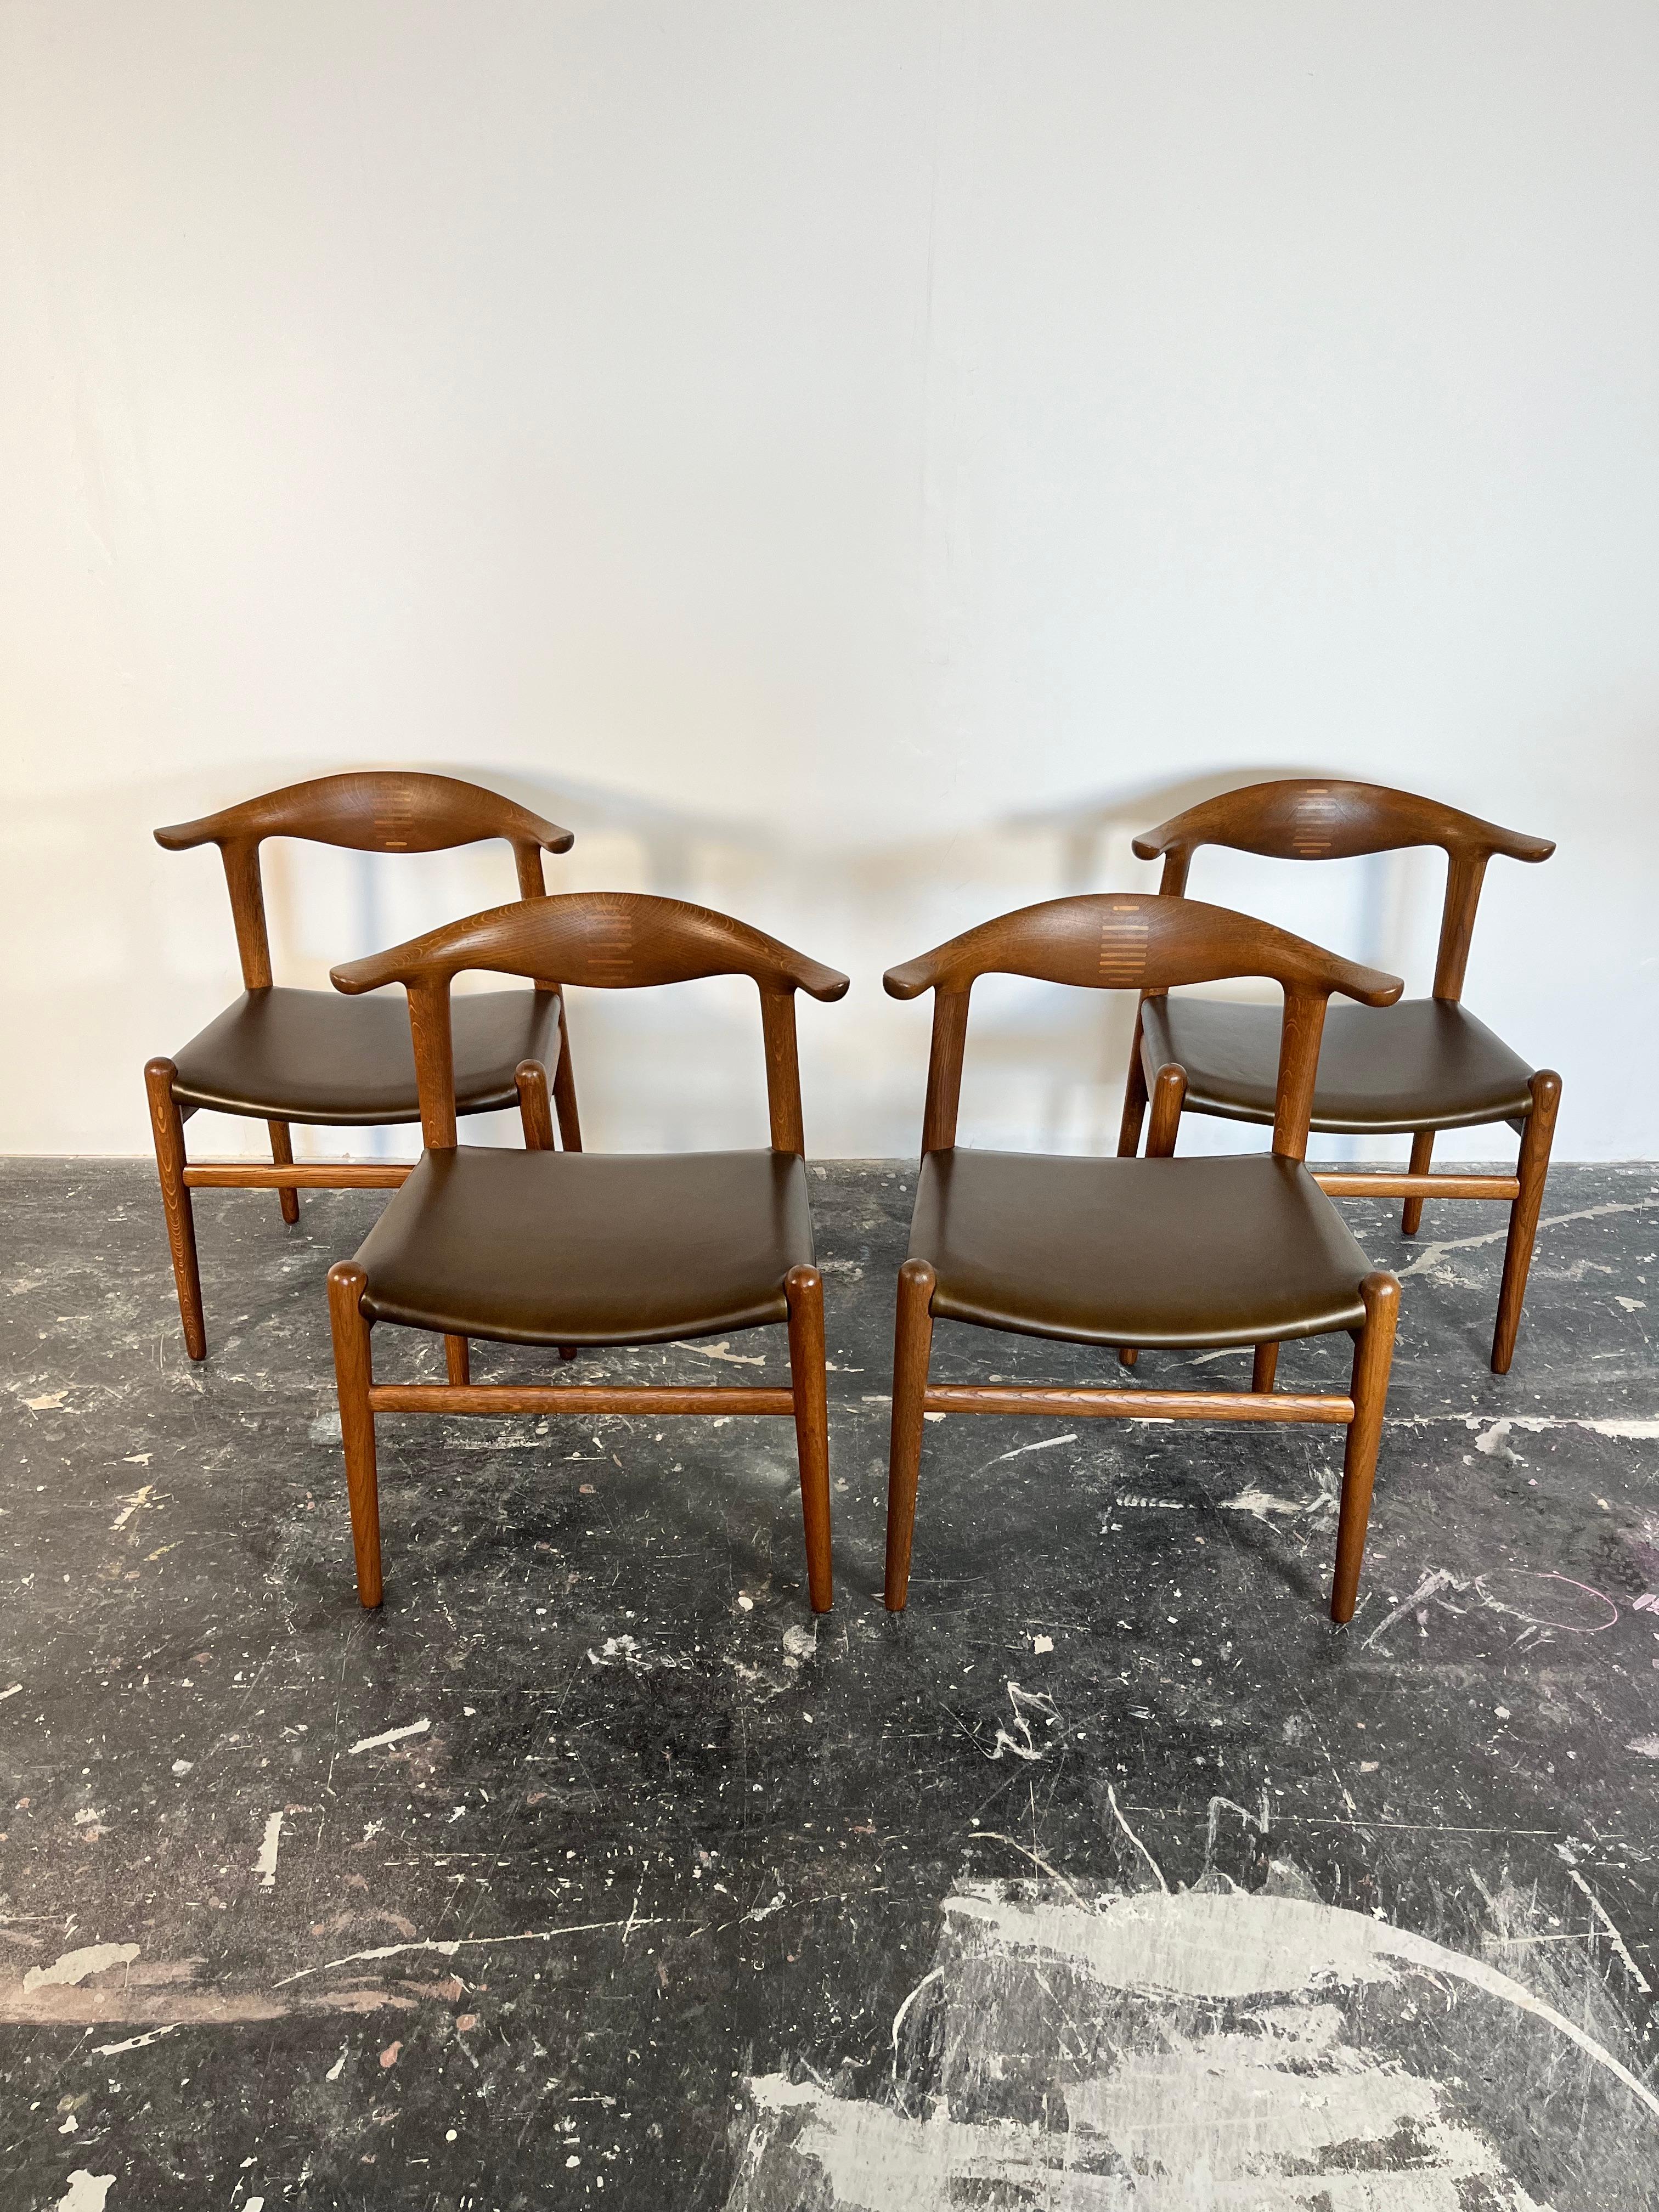 Satz von 4 restaurierten Eiche Cow Horn Stühlen von Hans Wegner mit neuen olivgrünen Ledersitzen. 

Dieses Set von Cow Horn Chairs ist selten zu sehen und außerordentlich gut verarbeitet, mit Einlagen aus brasilianischem Palisander, die das